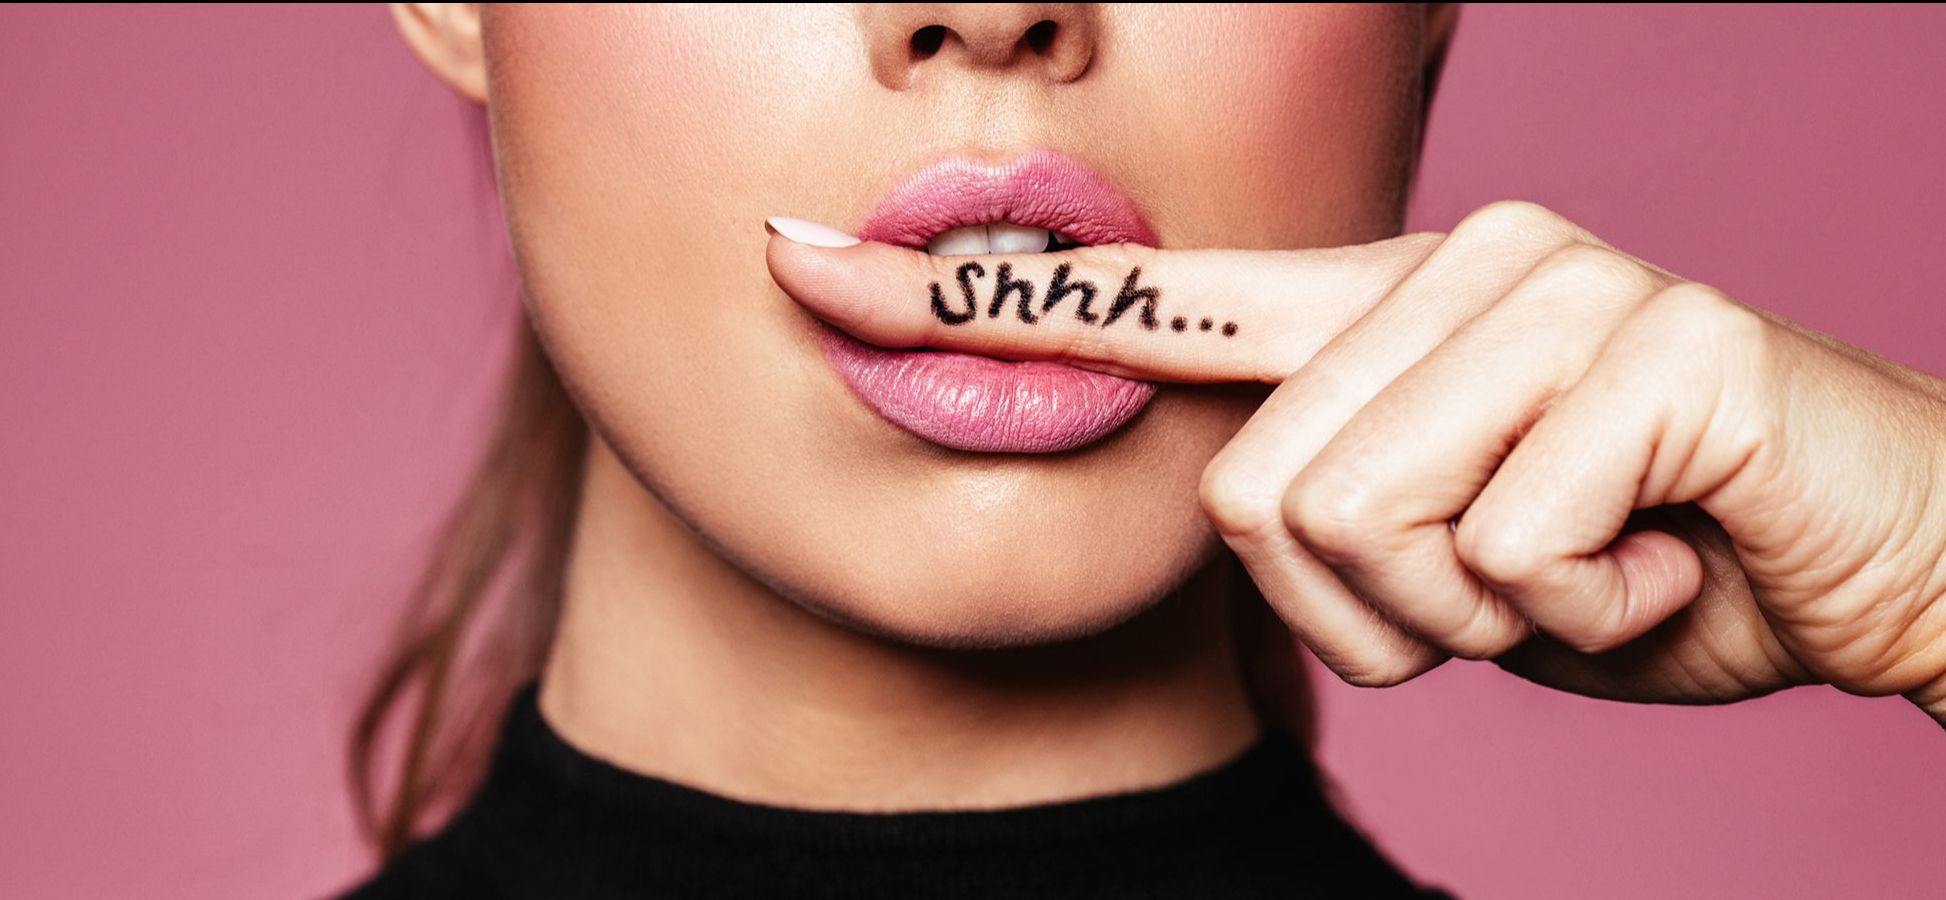 Frau hält einen Zeigefinger vor dem Mund, auf dem "Shhh..." geschrieben steht